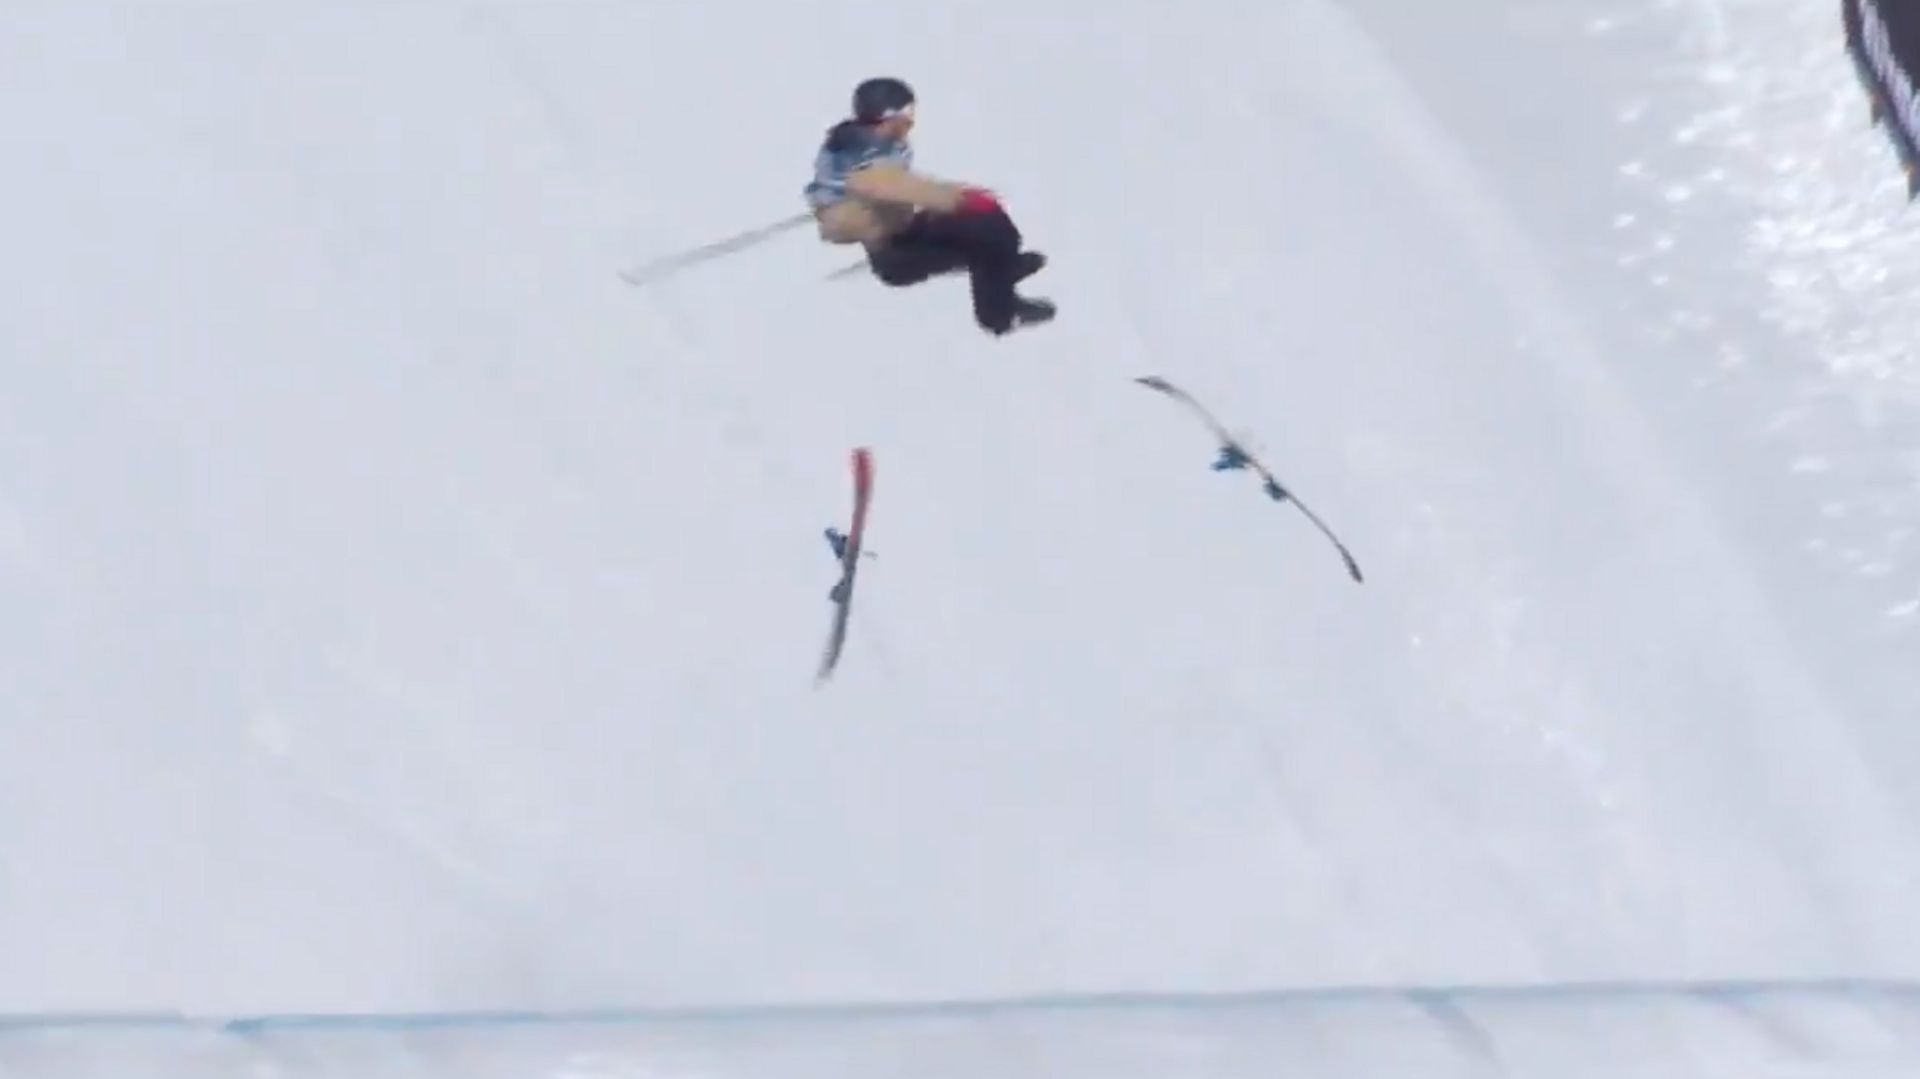 Cody Laplante perd ses skis en plein vol et chute lourdement